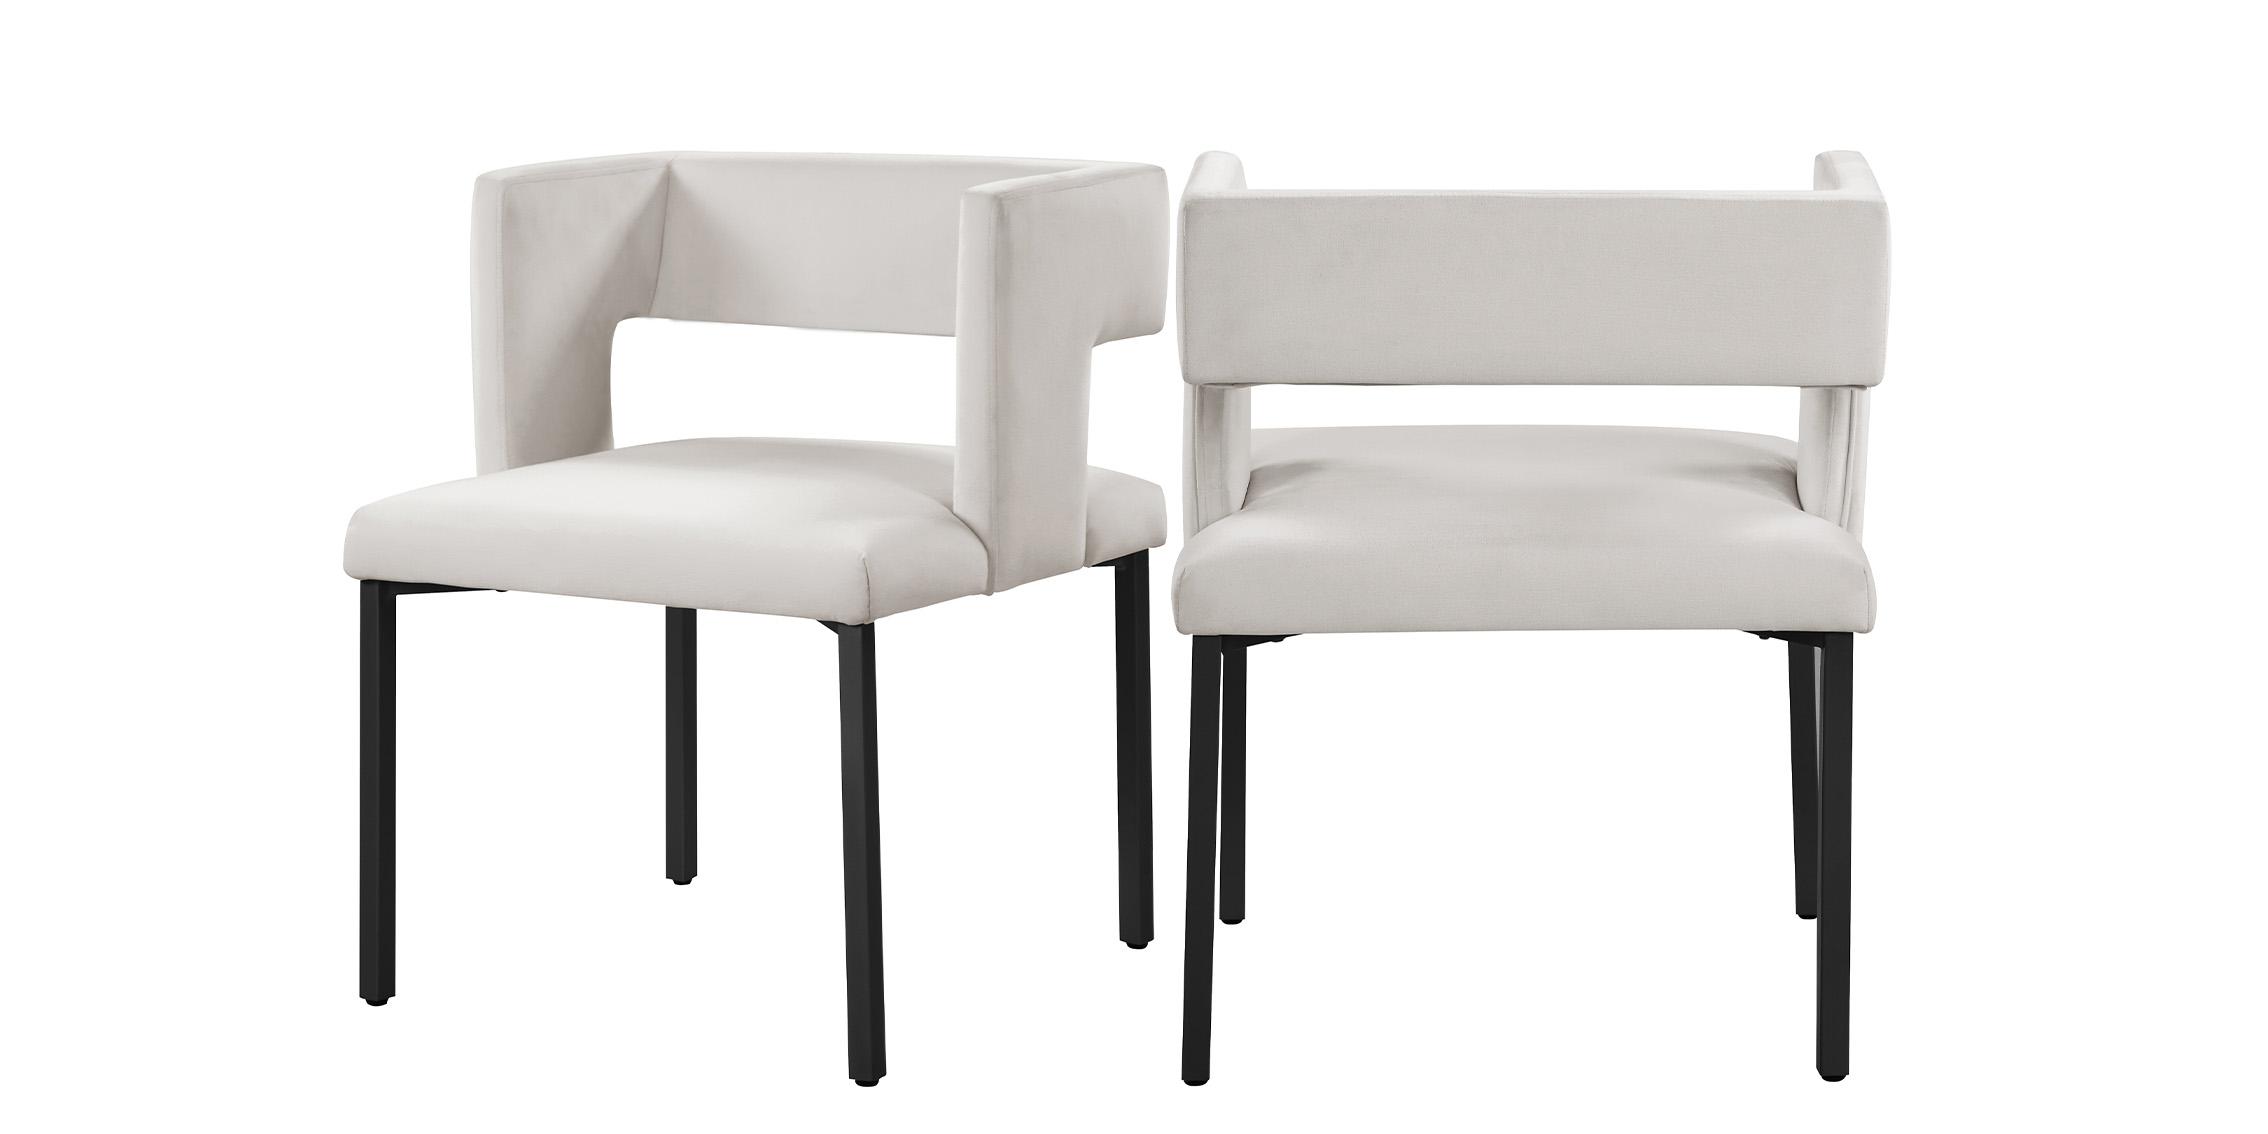 Contemporary, Modern Dining Chair Set CALEB 968Cream-C 968Cream-C in Cream, Black Velvet